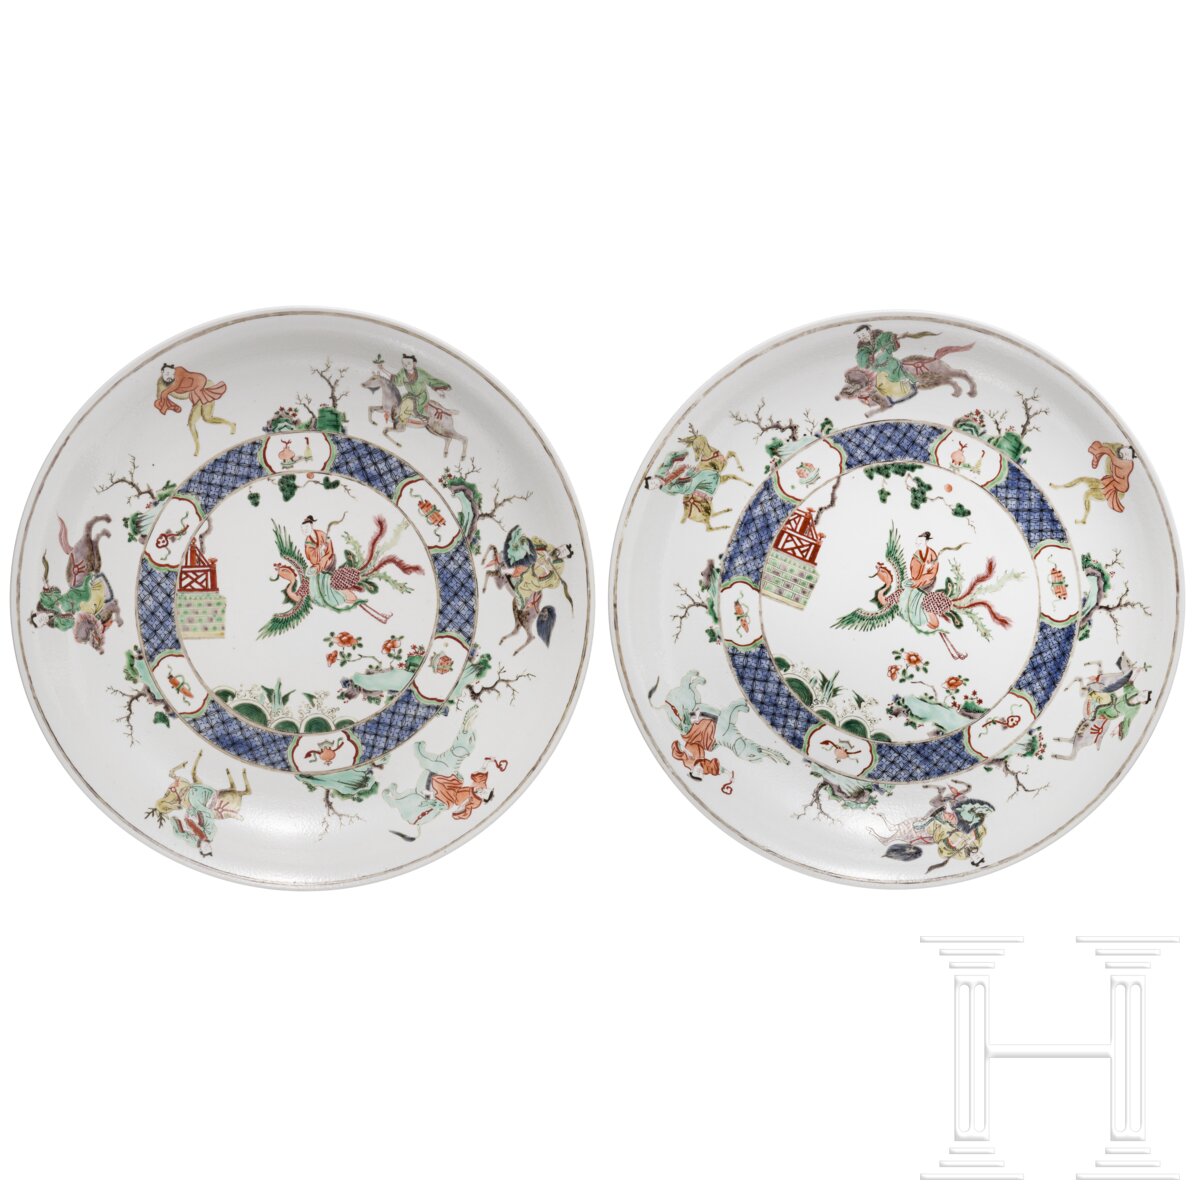 Zwei große Famille-verte-Teller mit figürlichem Dekor, China, wohl Kangxi-Periode (18. Jhdt.)